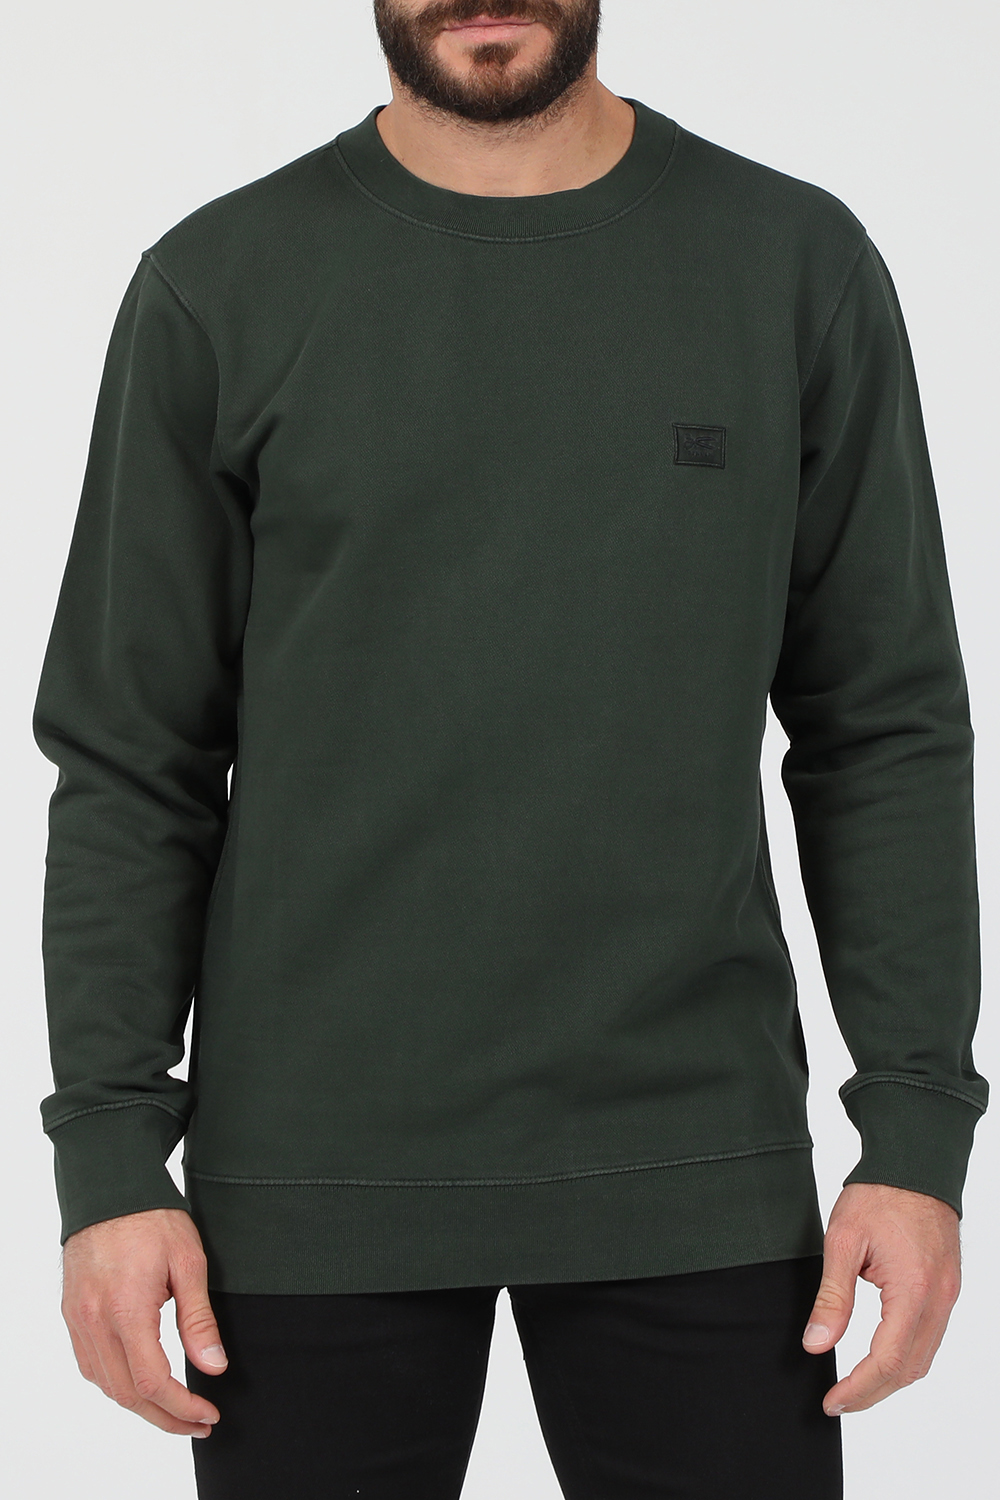 DENHAM – Ανδρική φούτερ μπλούζα DENHAM APPLIQ πράσινη 1823110.0-0101